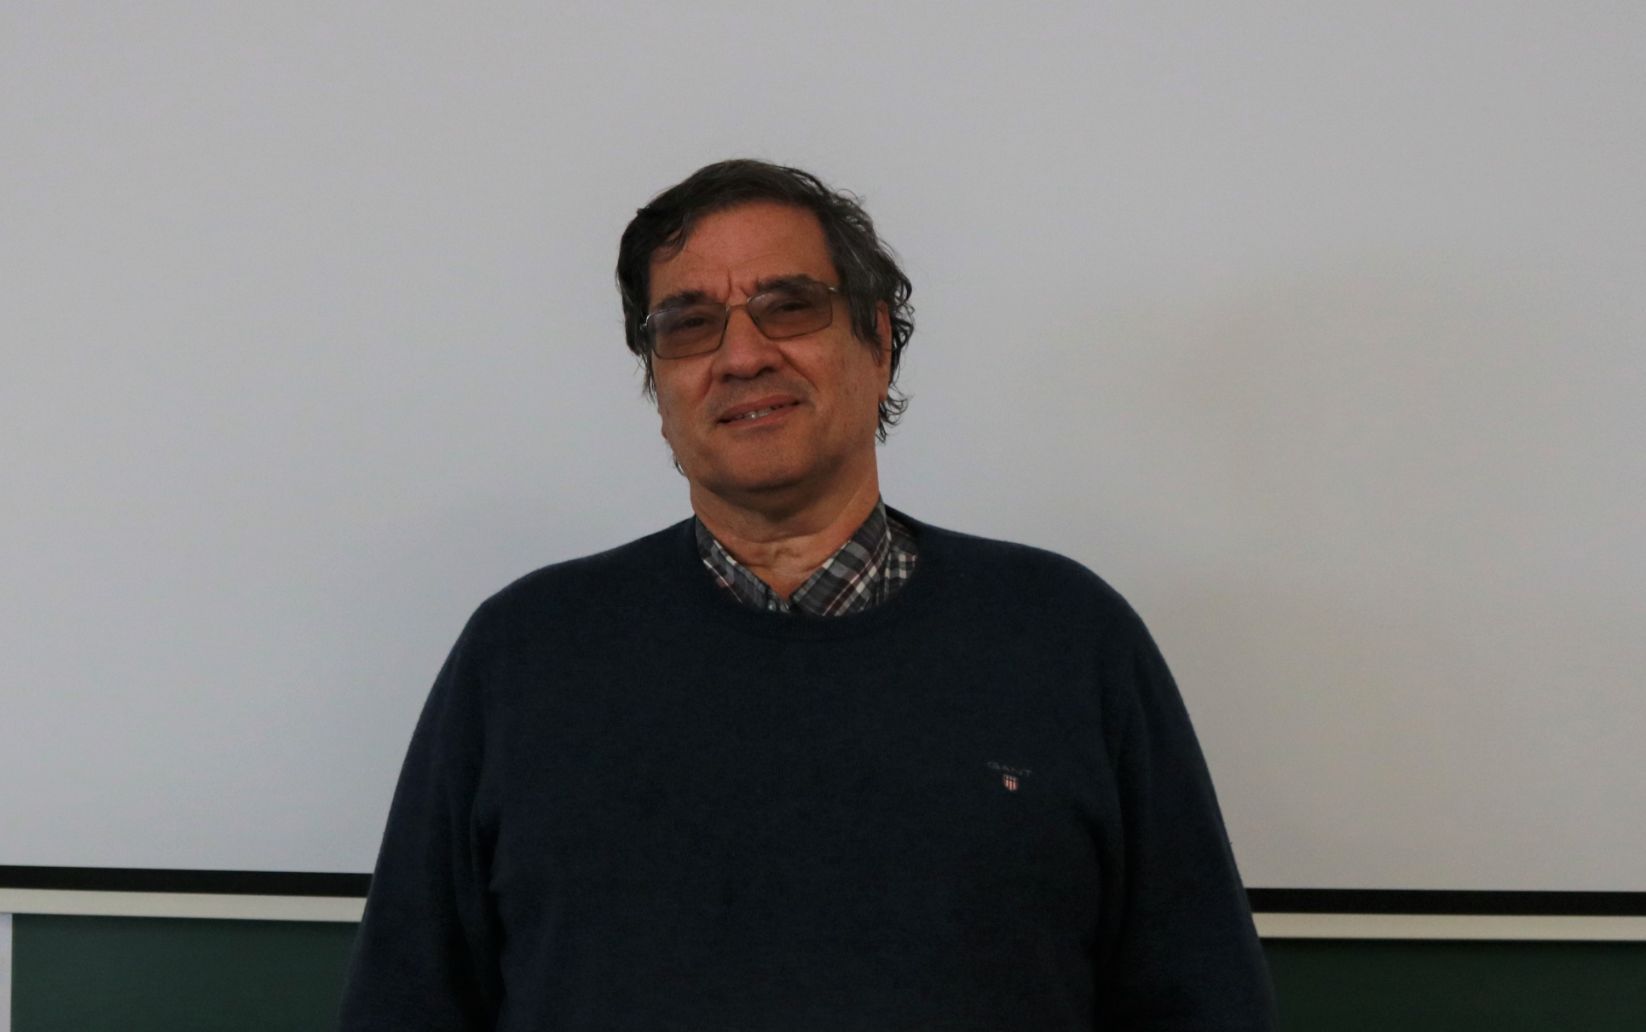 Especialista da Universidade de Coimbra nomeado para cargo europeu na área da supercomputação